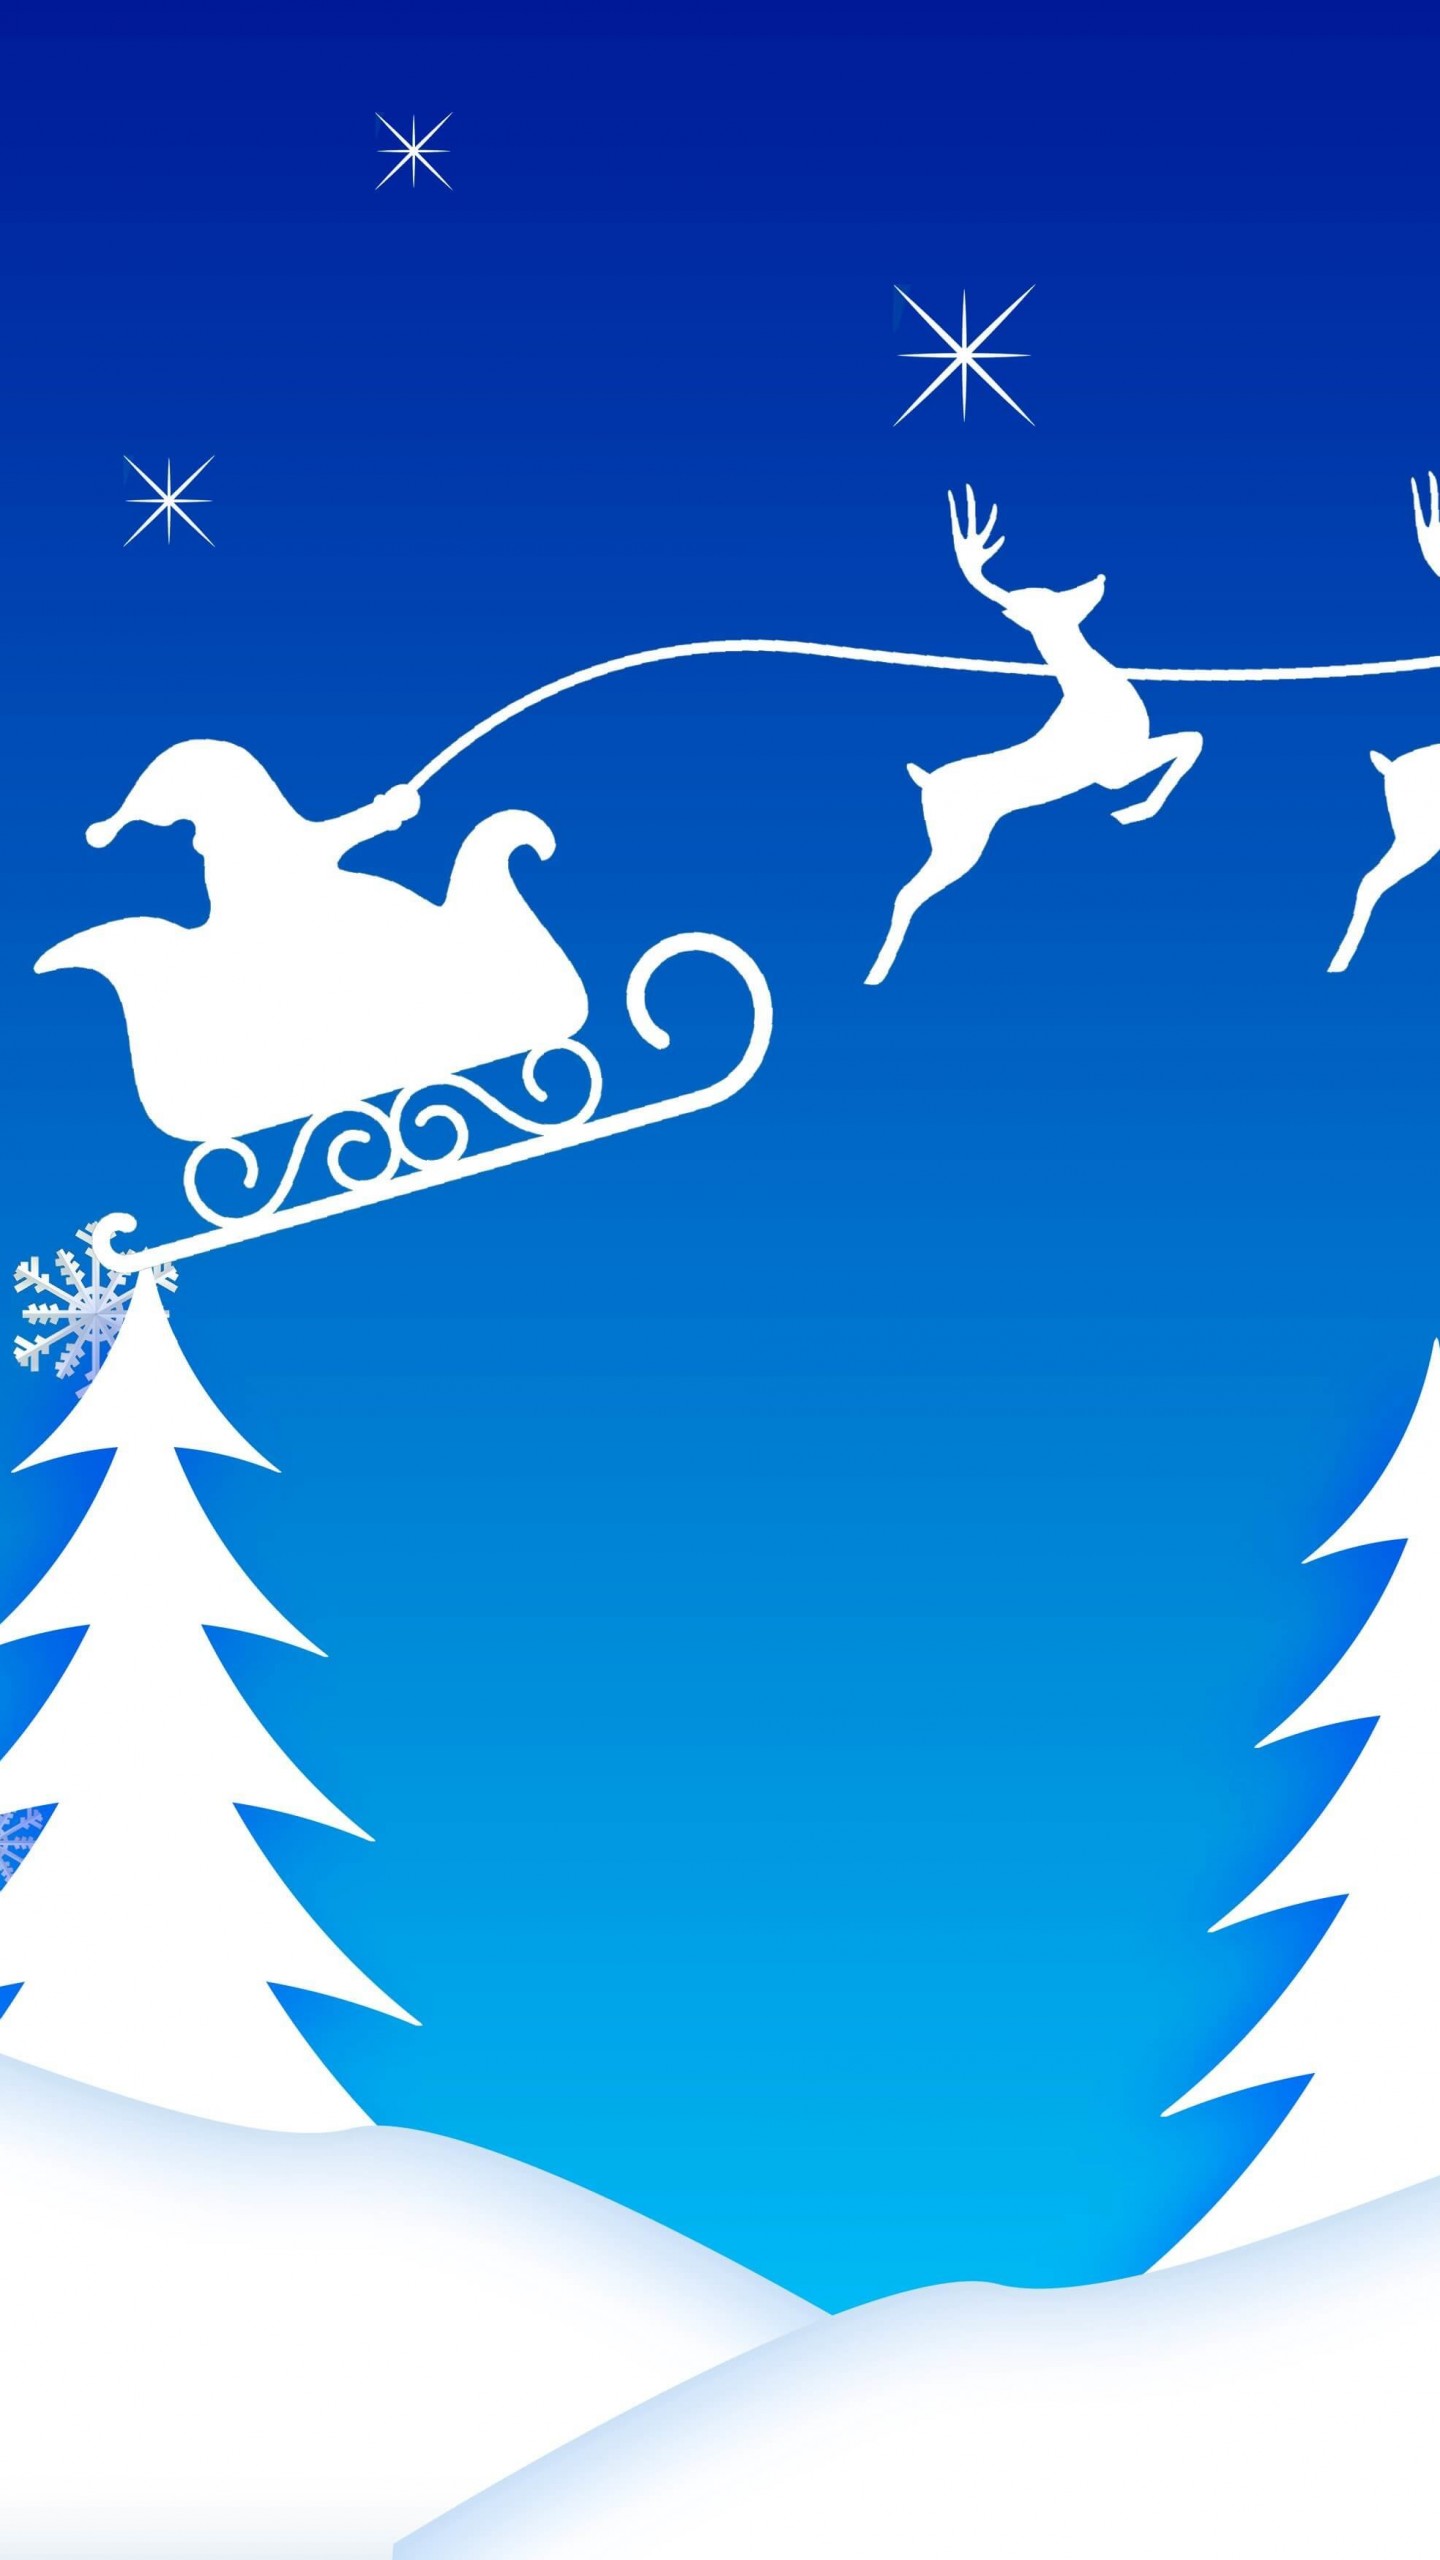 Santa’s Sleigh Illustration Wallpaper for Google Nexus 6P